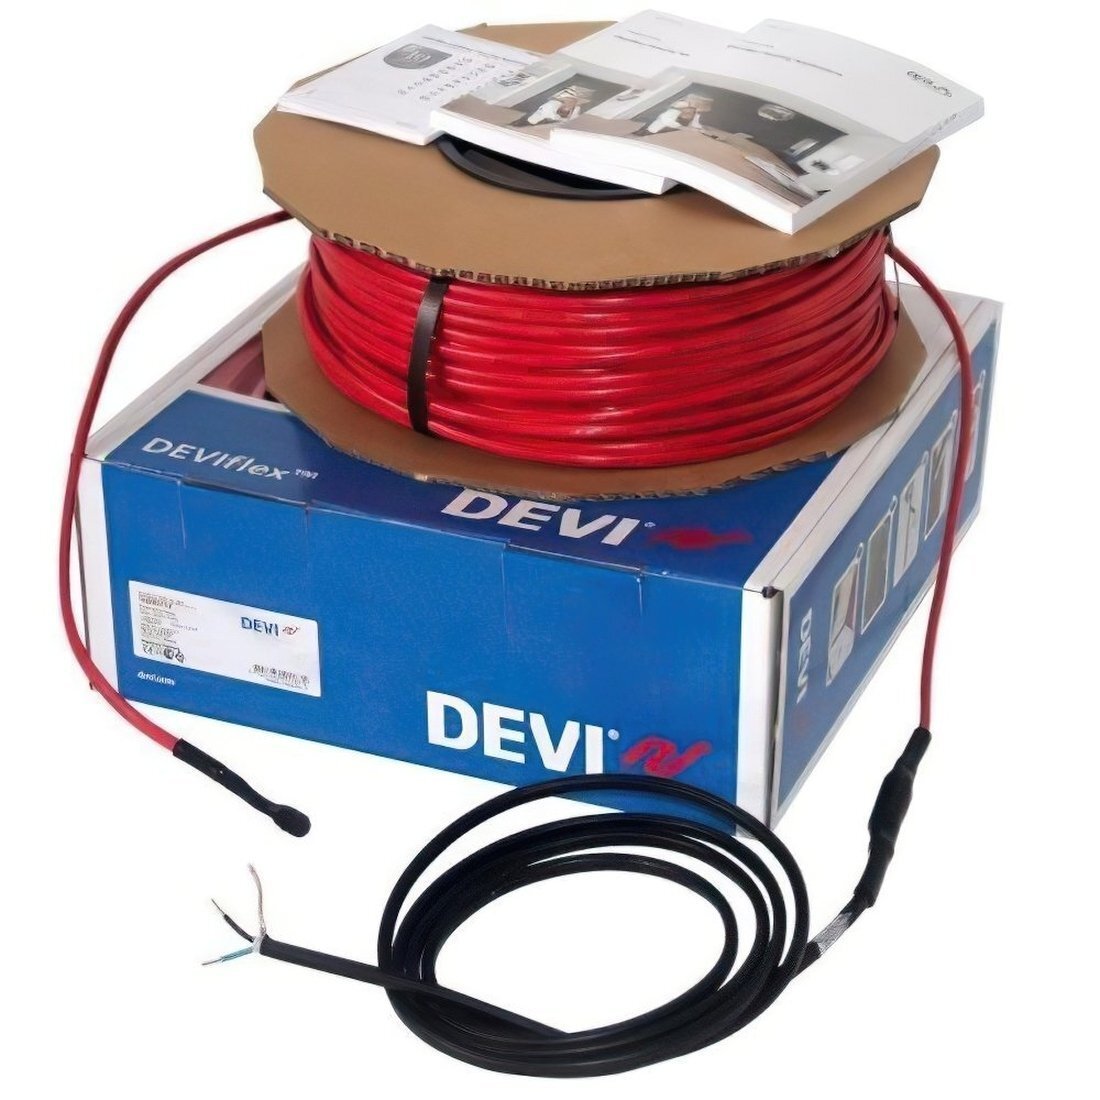 Теплый пол DEVI Flex двухжильный нагревательный кабель 18T, 1075 Вт, 230V, 59м (140F1244) фото 1